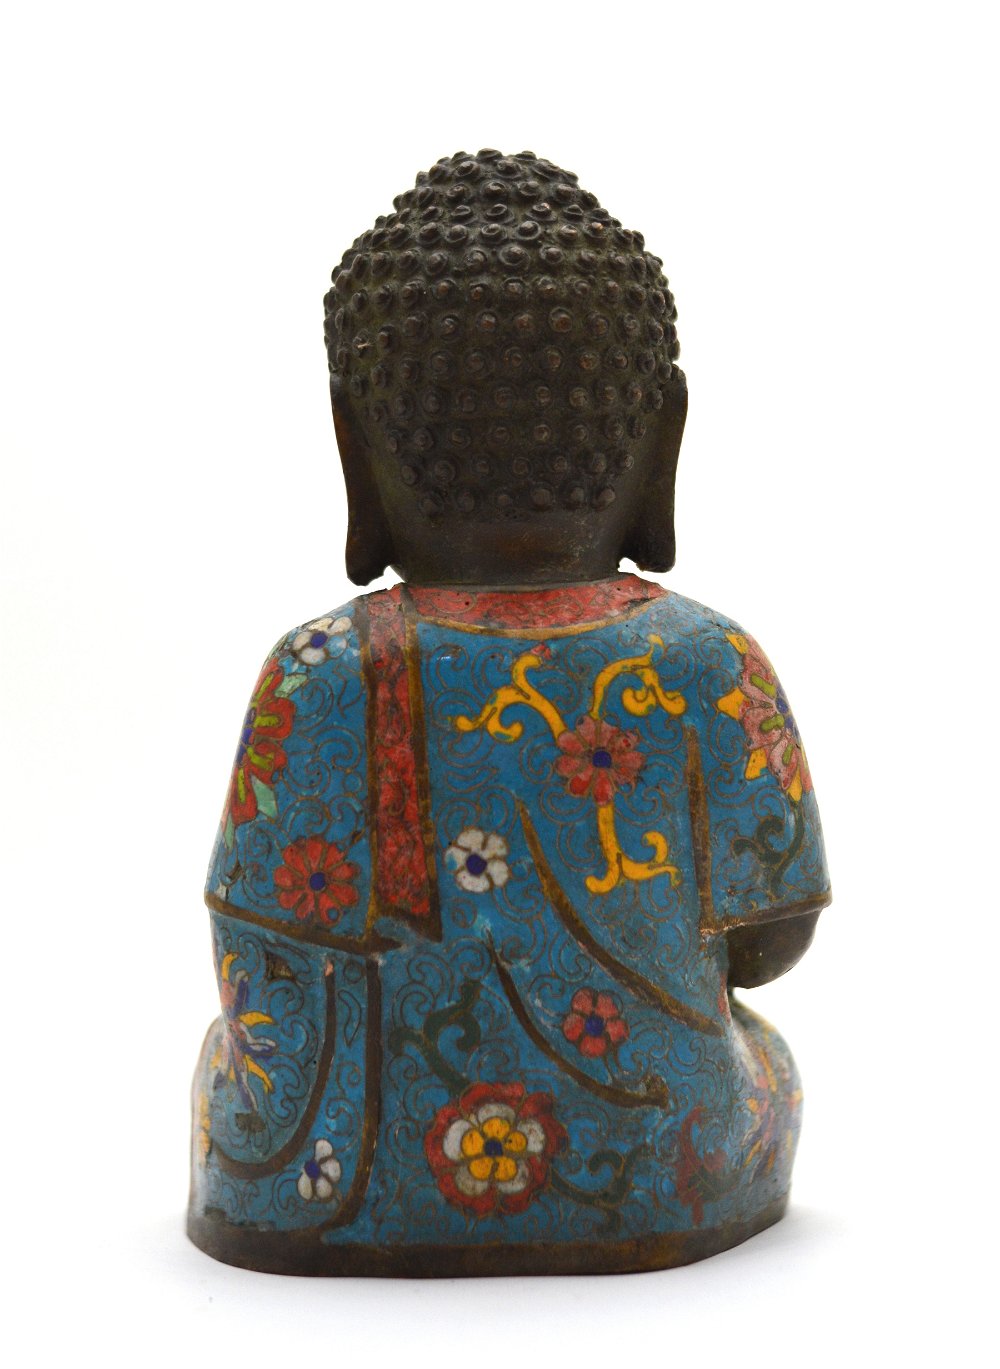 Статуэтка Будда с пагодой, 21 см